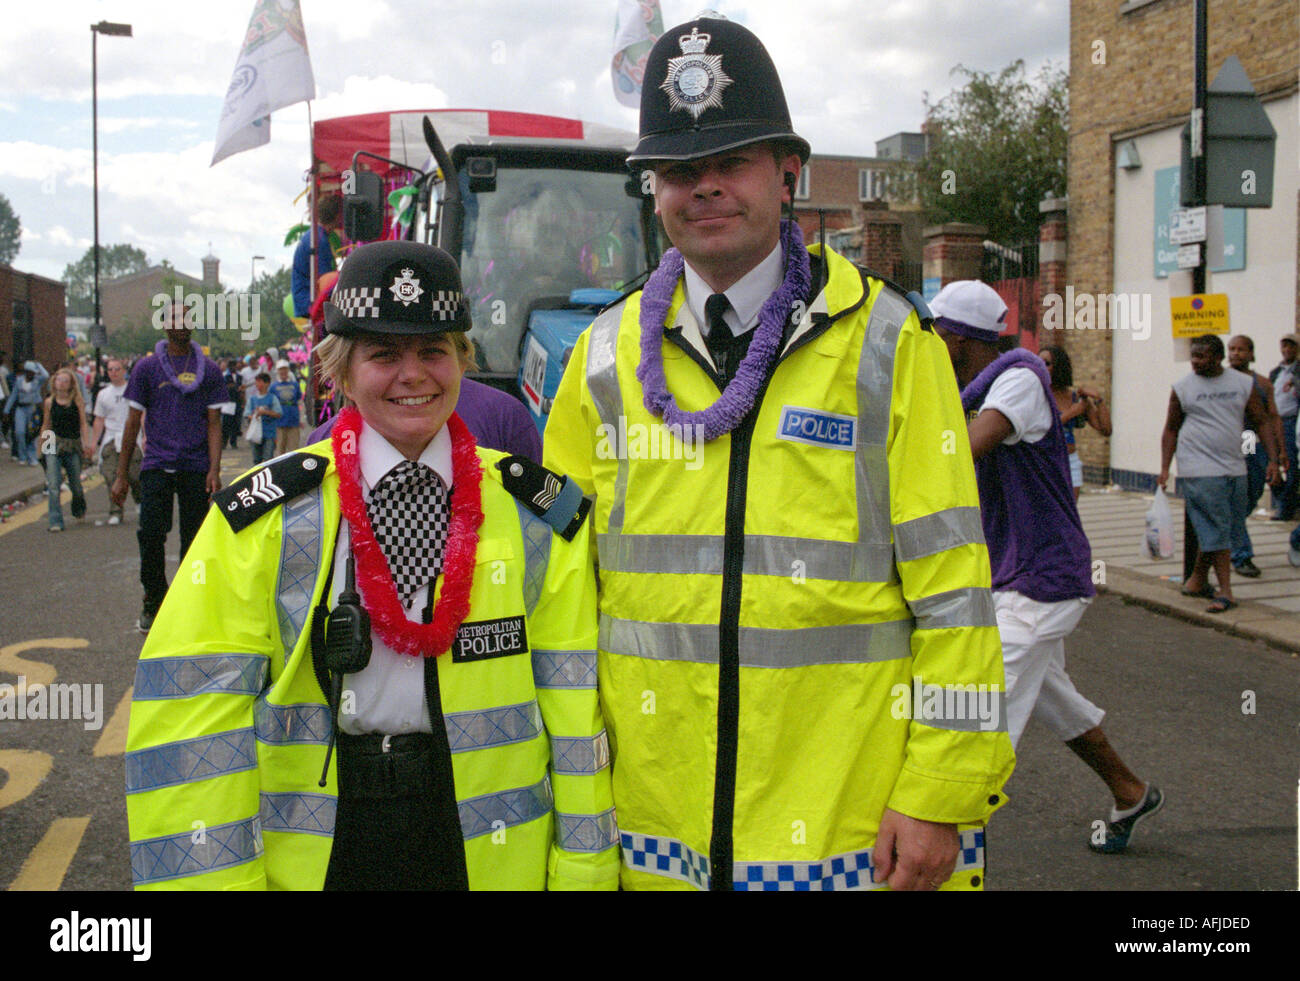 Polizist und Polizistin auf Streife am jährlichen Karneval von Notting Hill  Gate in London zusammen Stockfotografie - Alamy